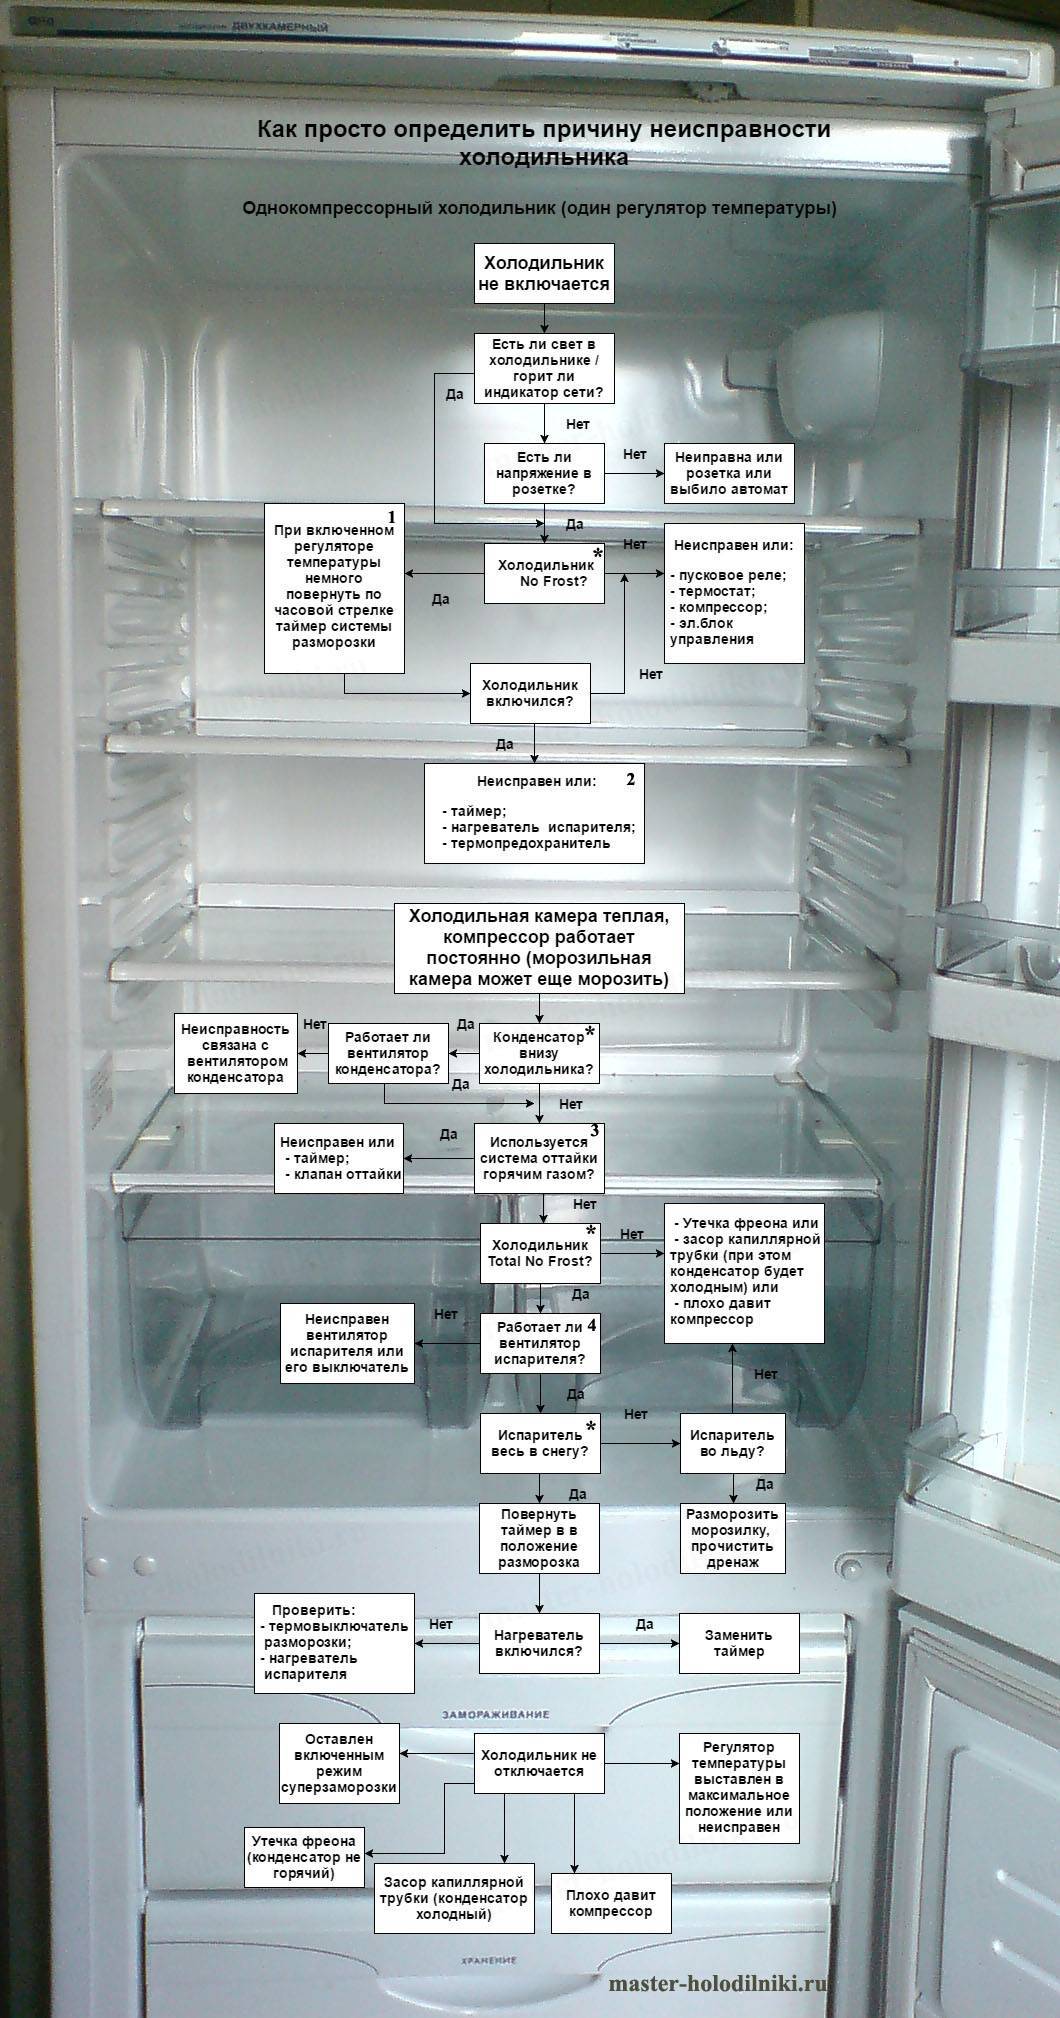 Не работает холодильник ⭐что делать, если холодильник не включается, не светит, не морозит? инструкция по ремонту - гайд от home-tehno????